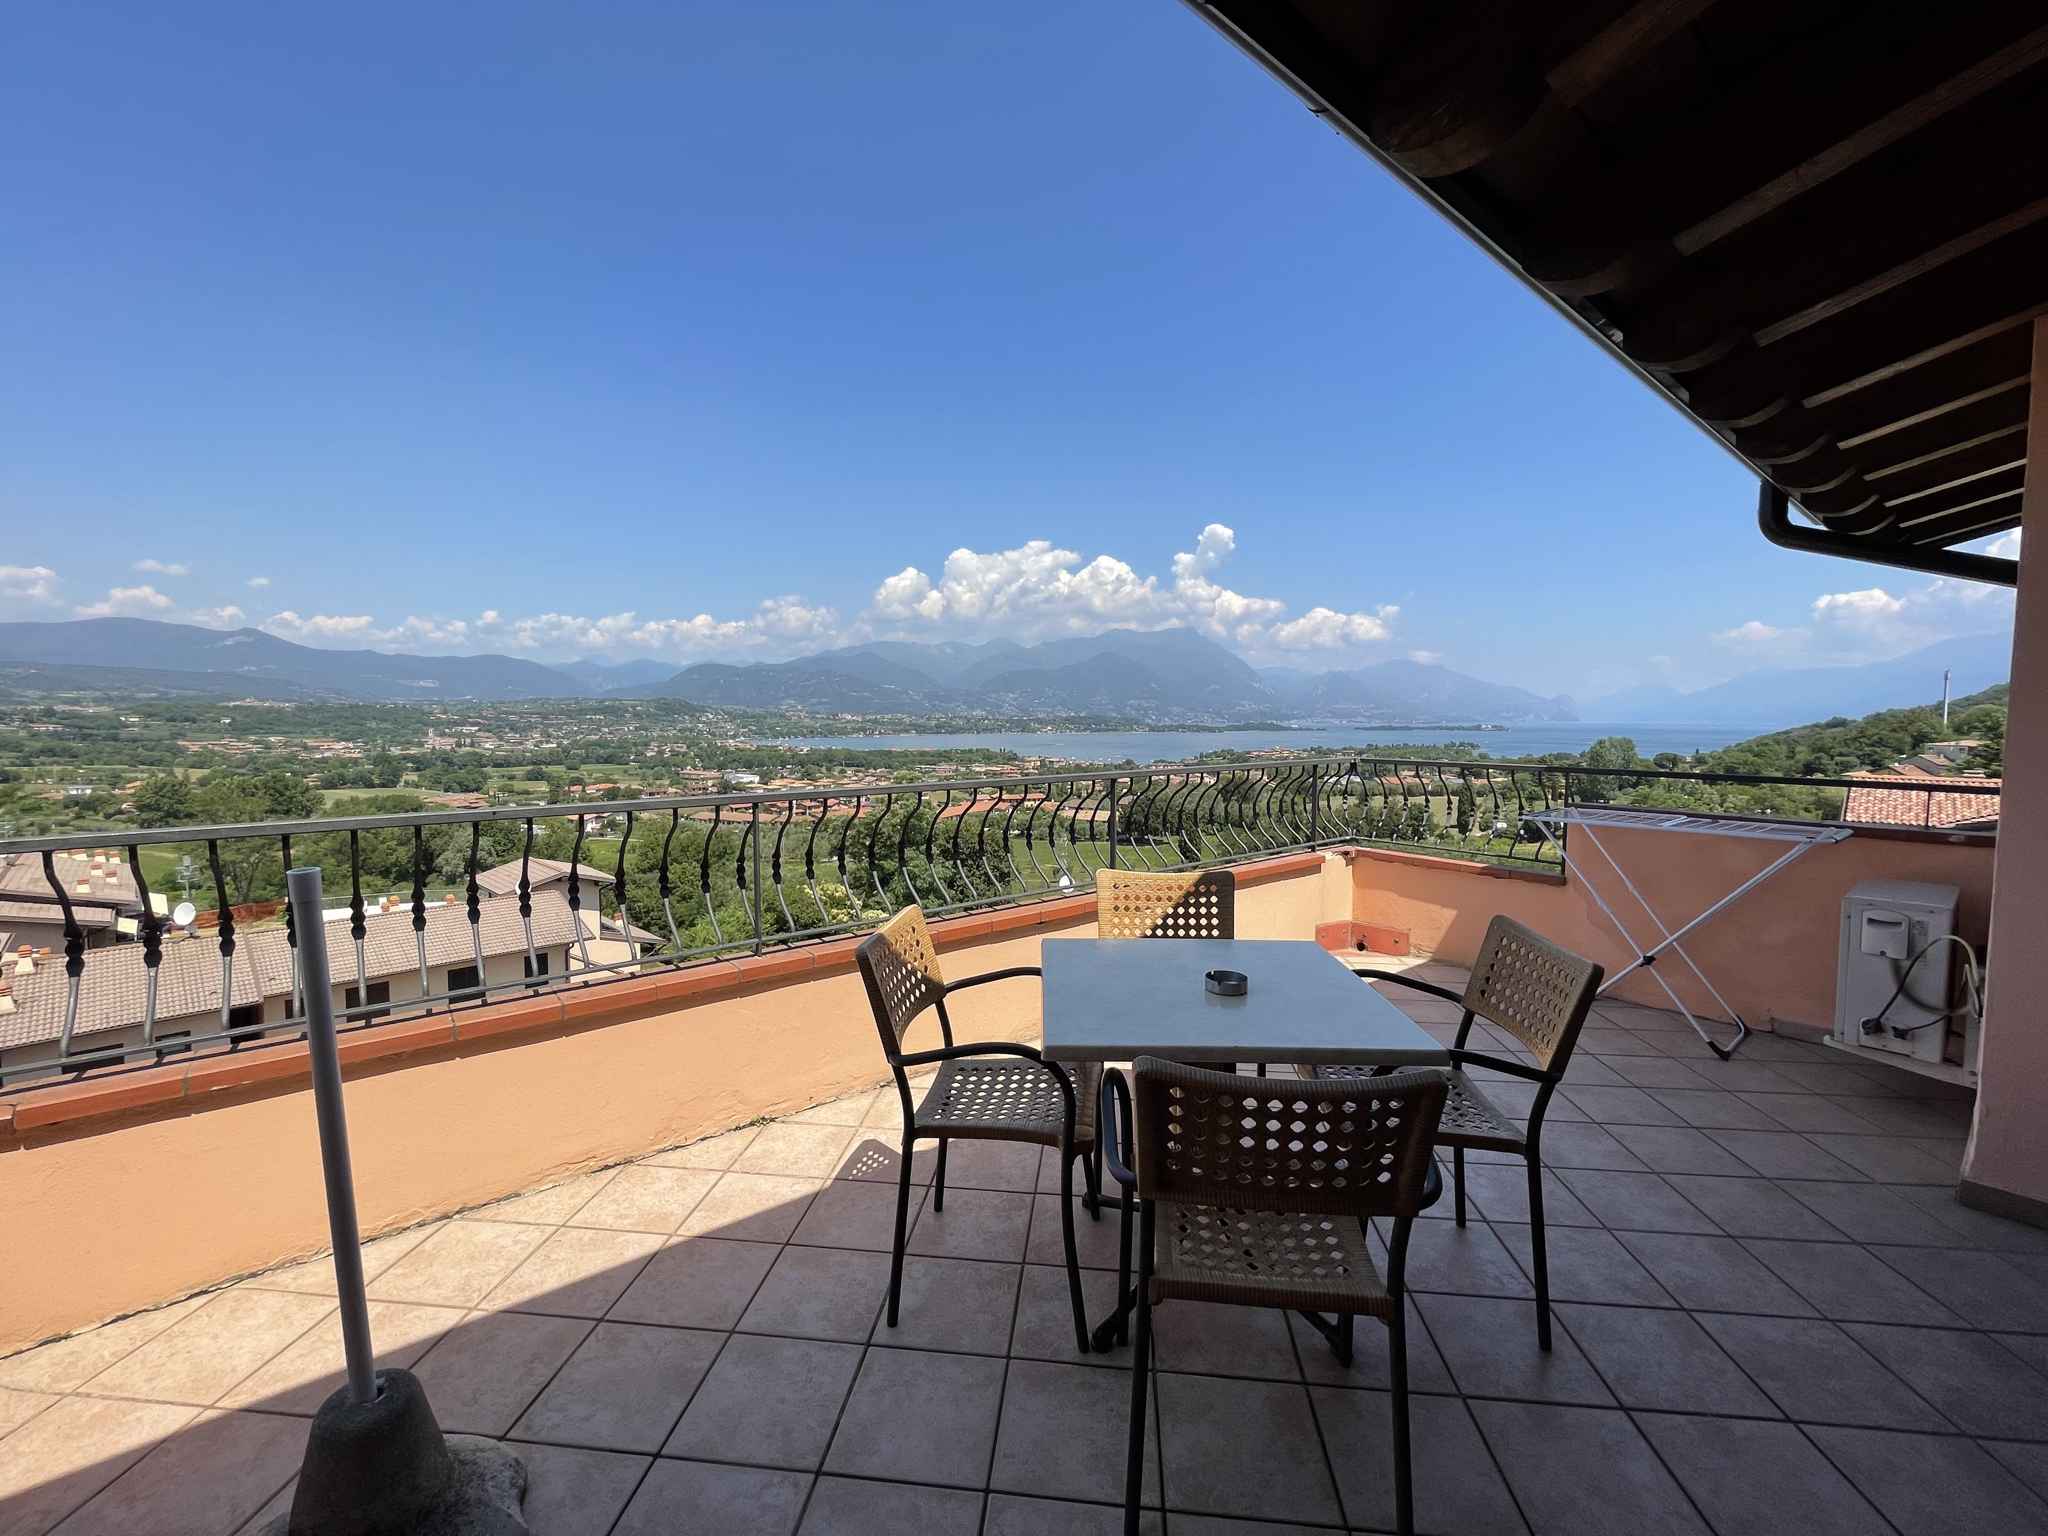 Ferienwohnung in der Residence Bellavista mit Pool  in Italien